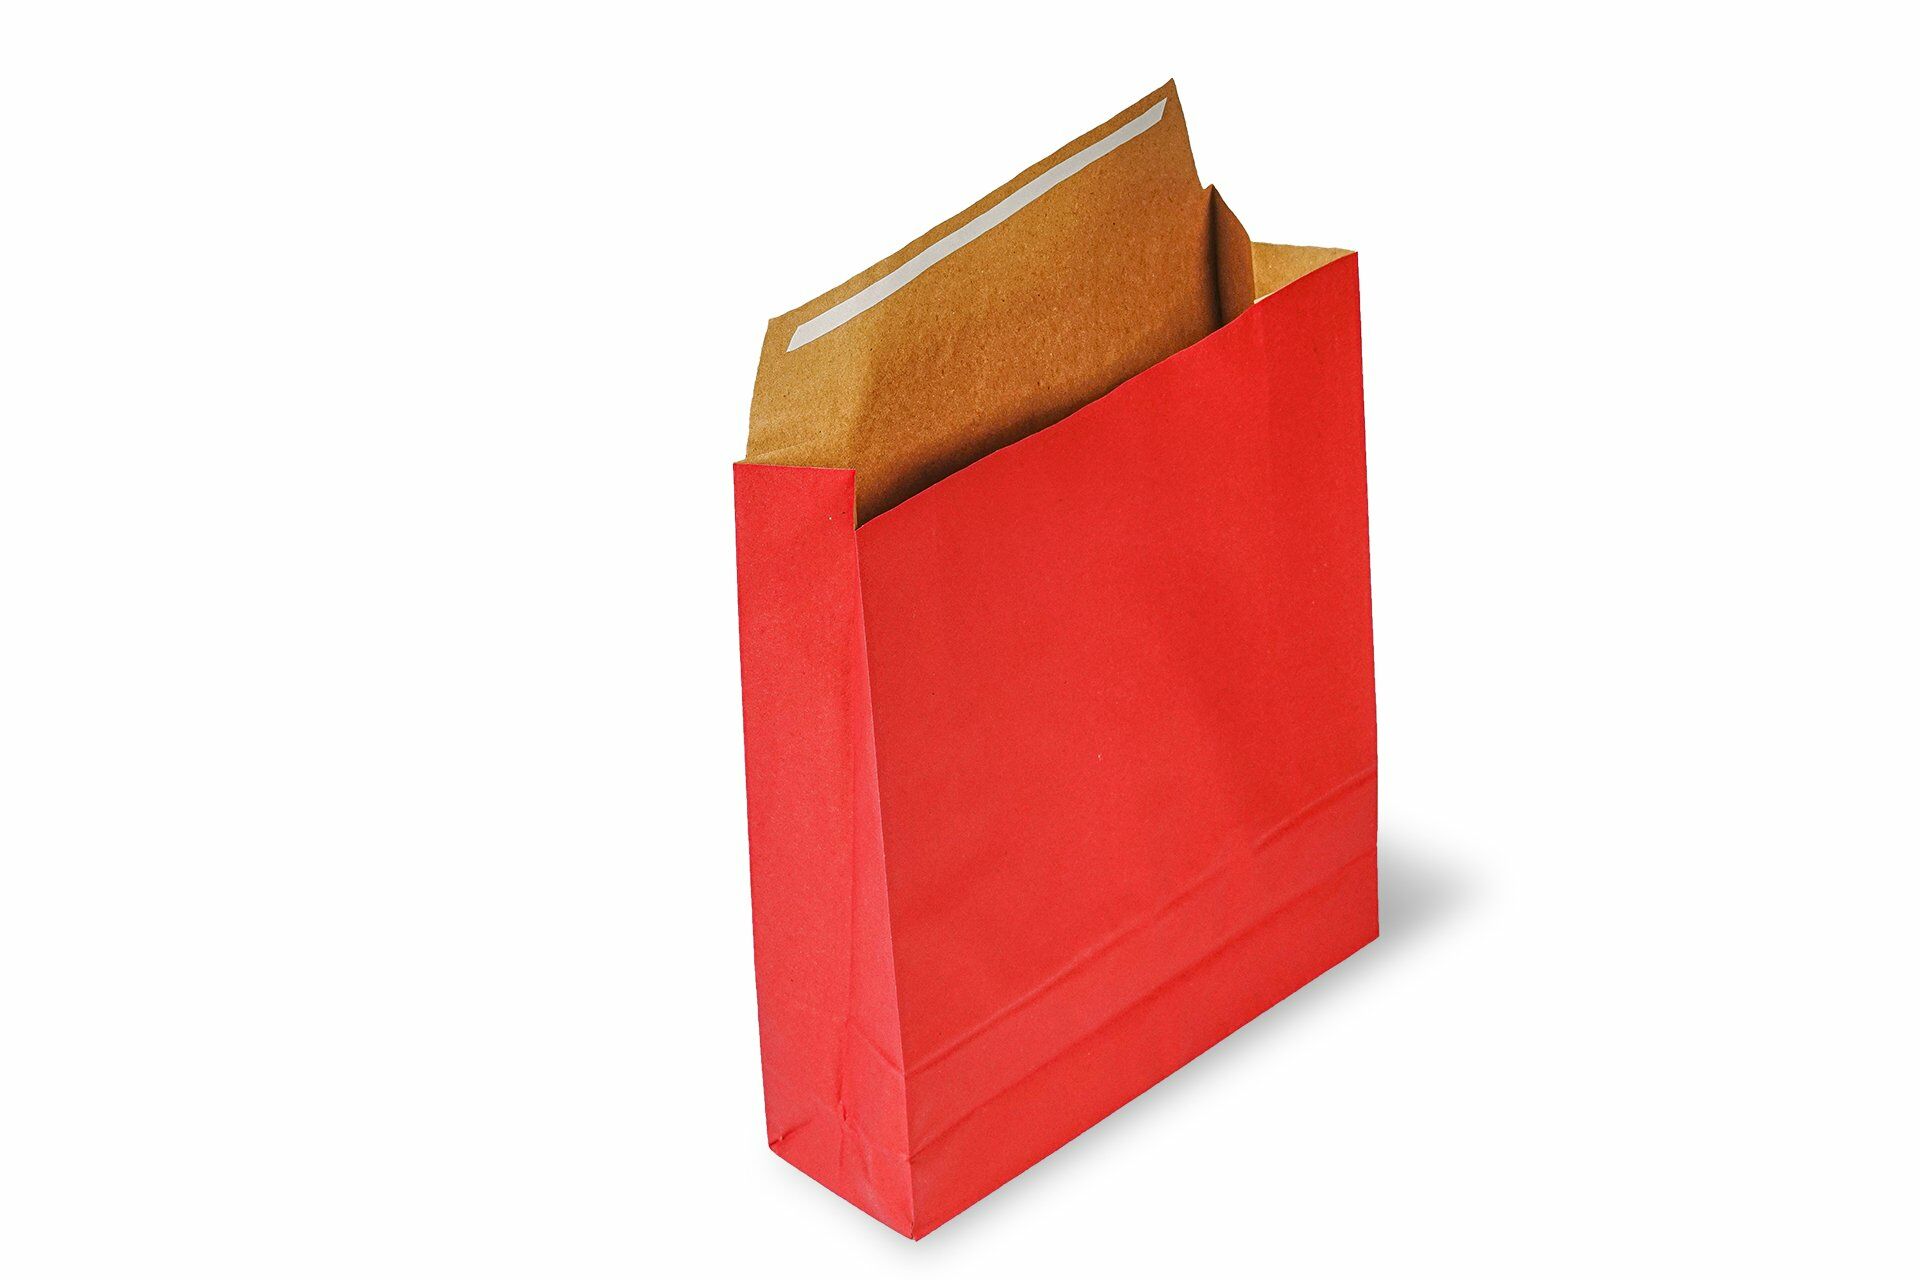 Roco Paper Hediye Paketi 35*8*54 cm Kese Kağıdı Yapışkanlı Ağız Bordo 25'li Paket